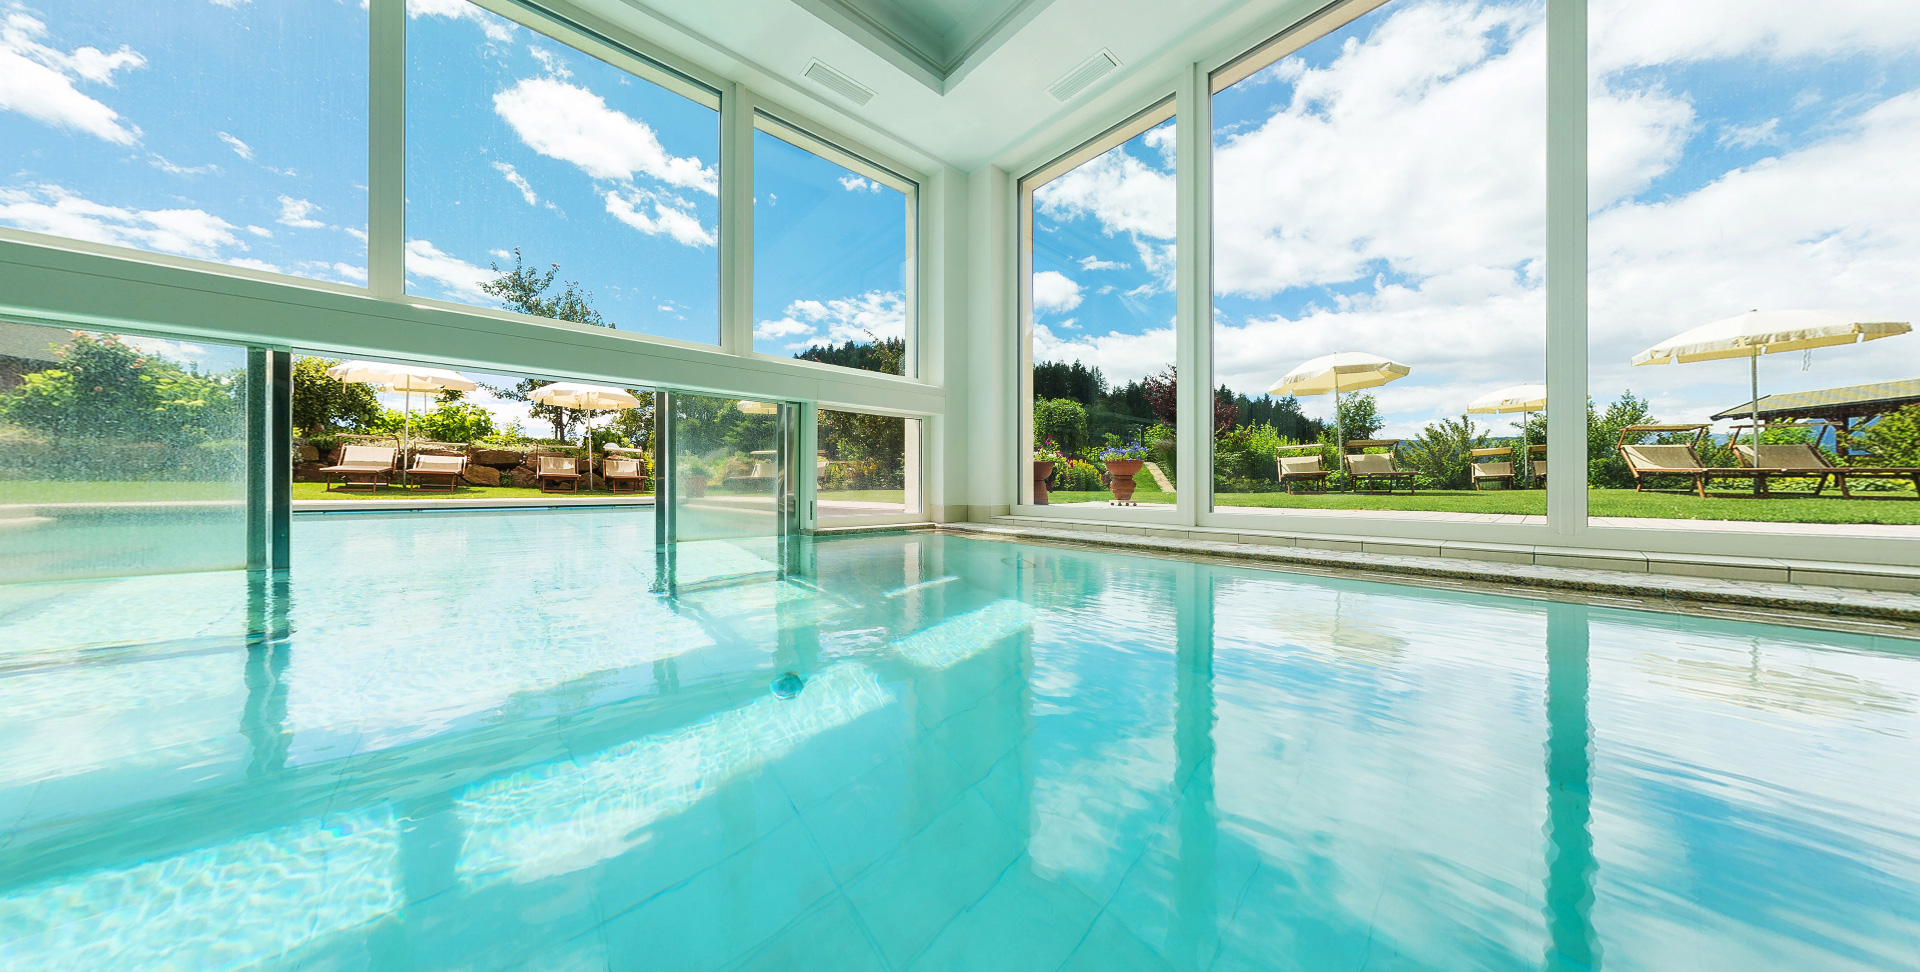 Hotel Sulfner mit Pool und Liegewiese | Hotel Sulfner con piscina e prato per prendere il sole | Hotel Sulfner with pool and sunbathing lawn